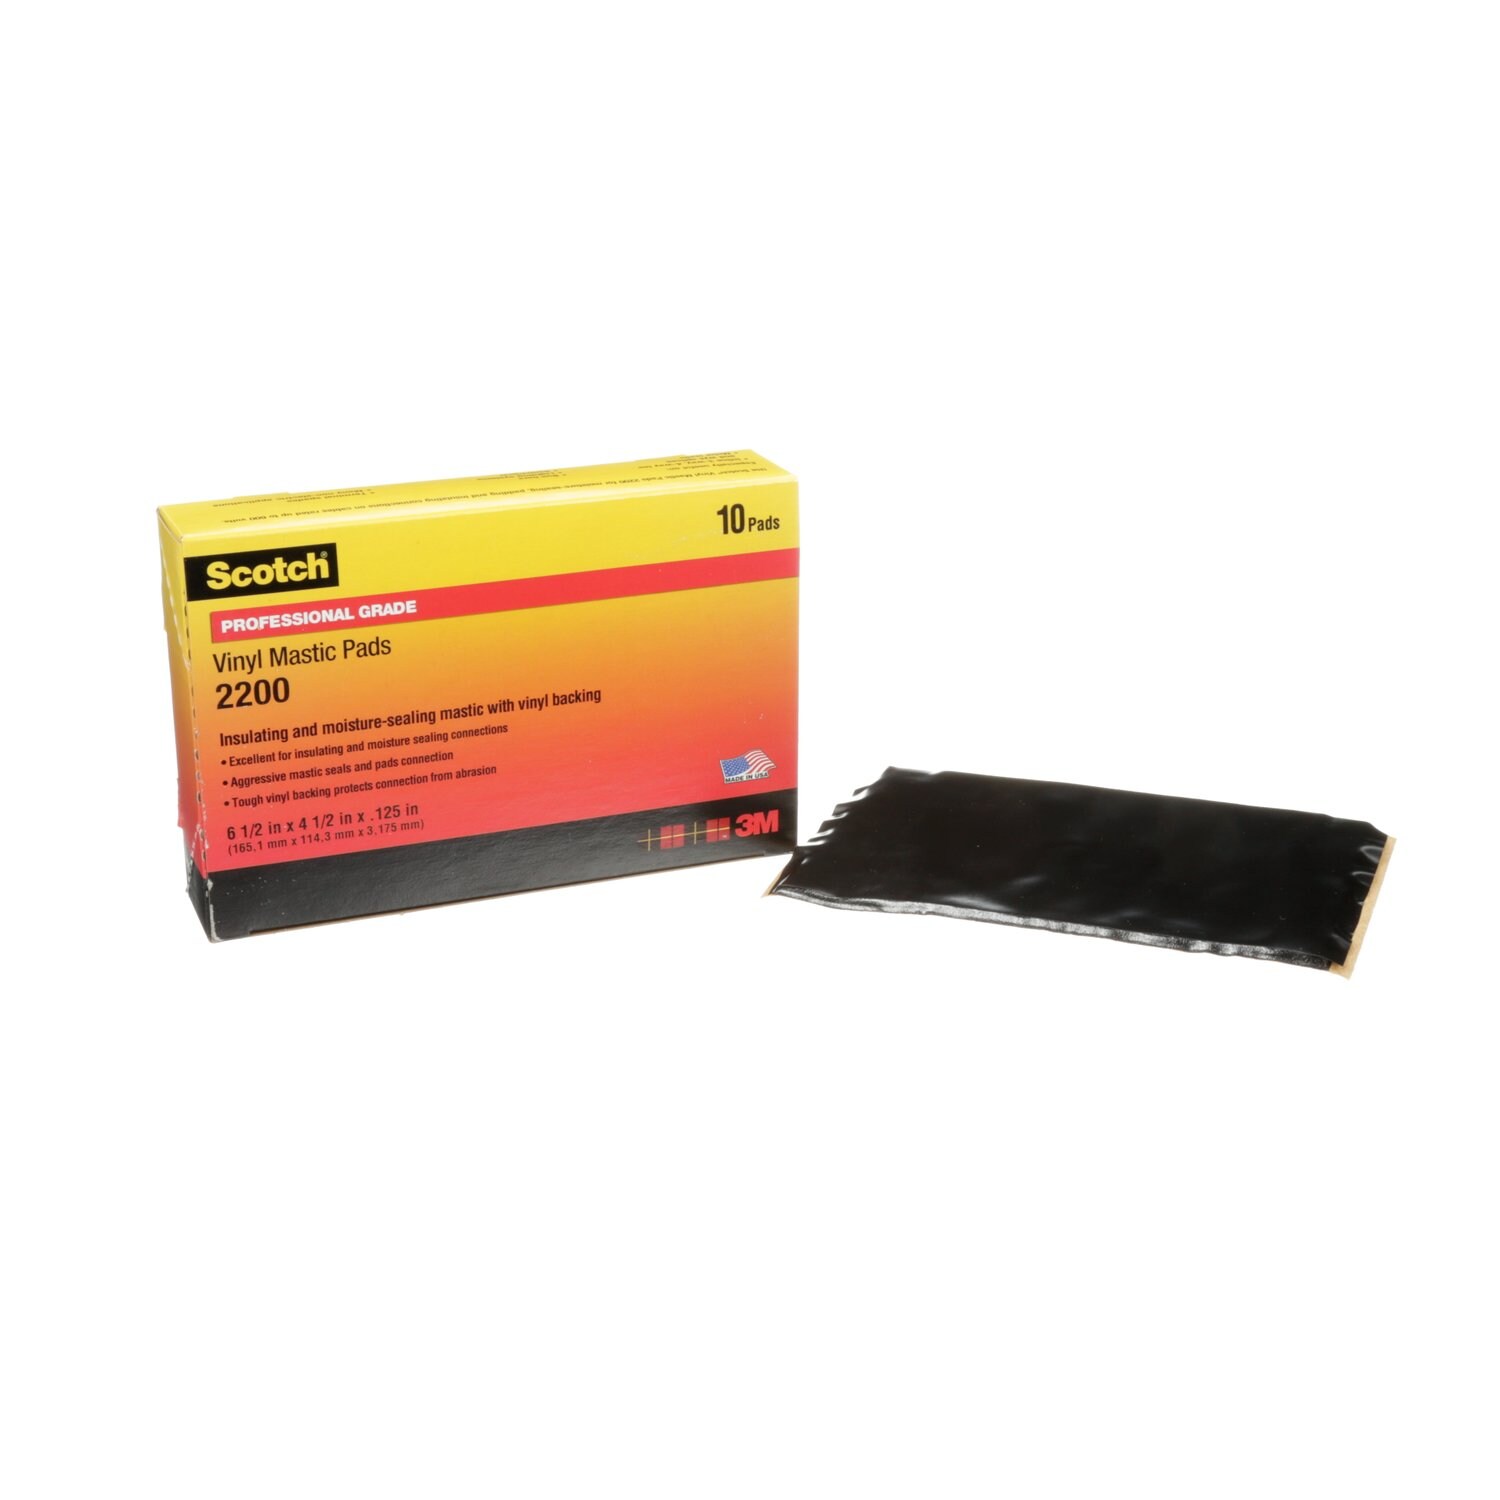 7000057774 - Scotch Vinyl Mastic Pad 2200, 6-1/2 in x 4-1/2 in, Black, 10
pads/carton, 50 pads/Case